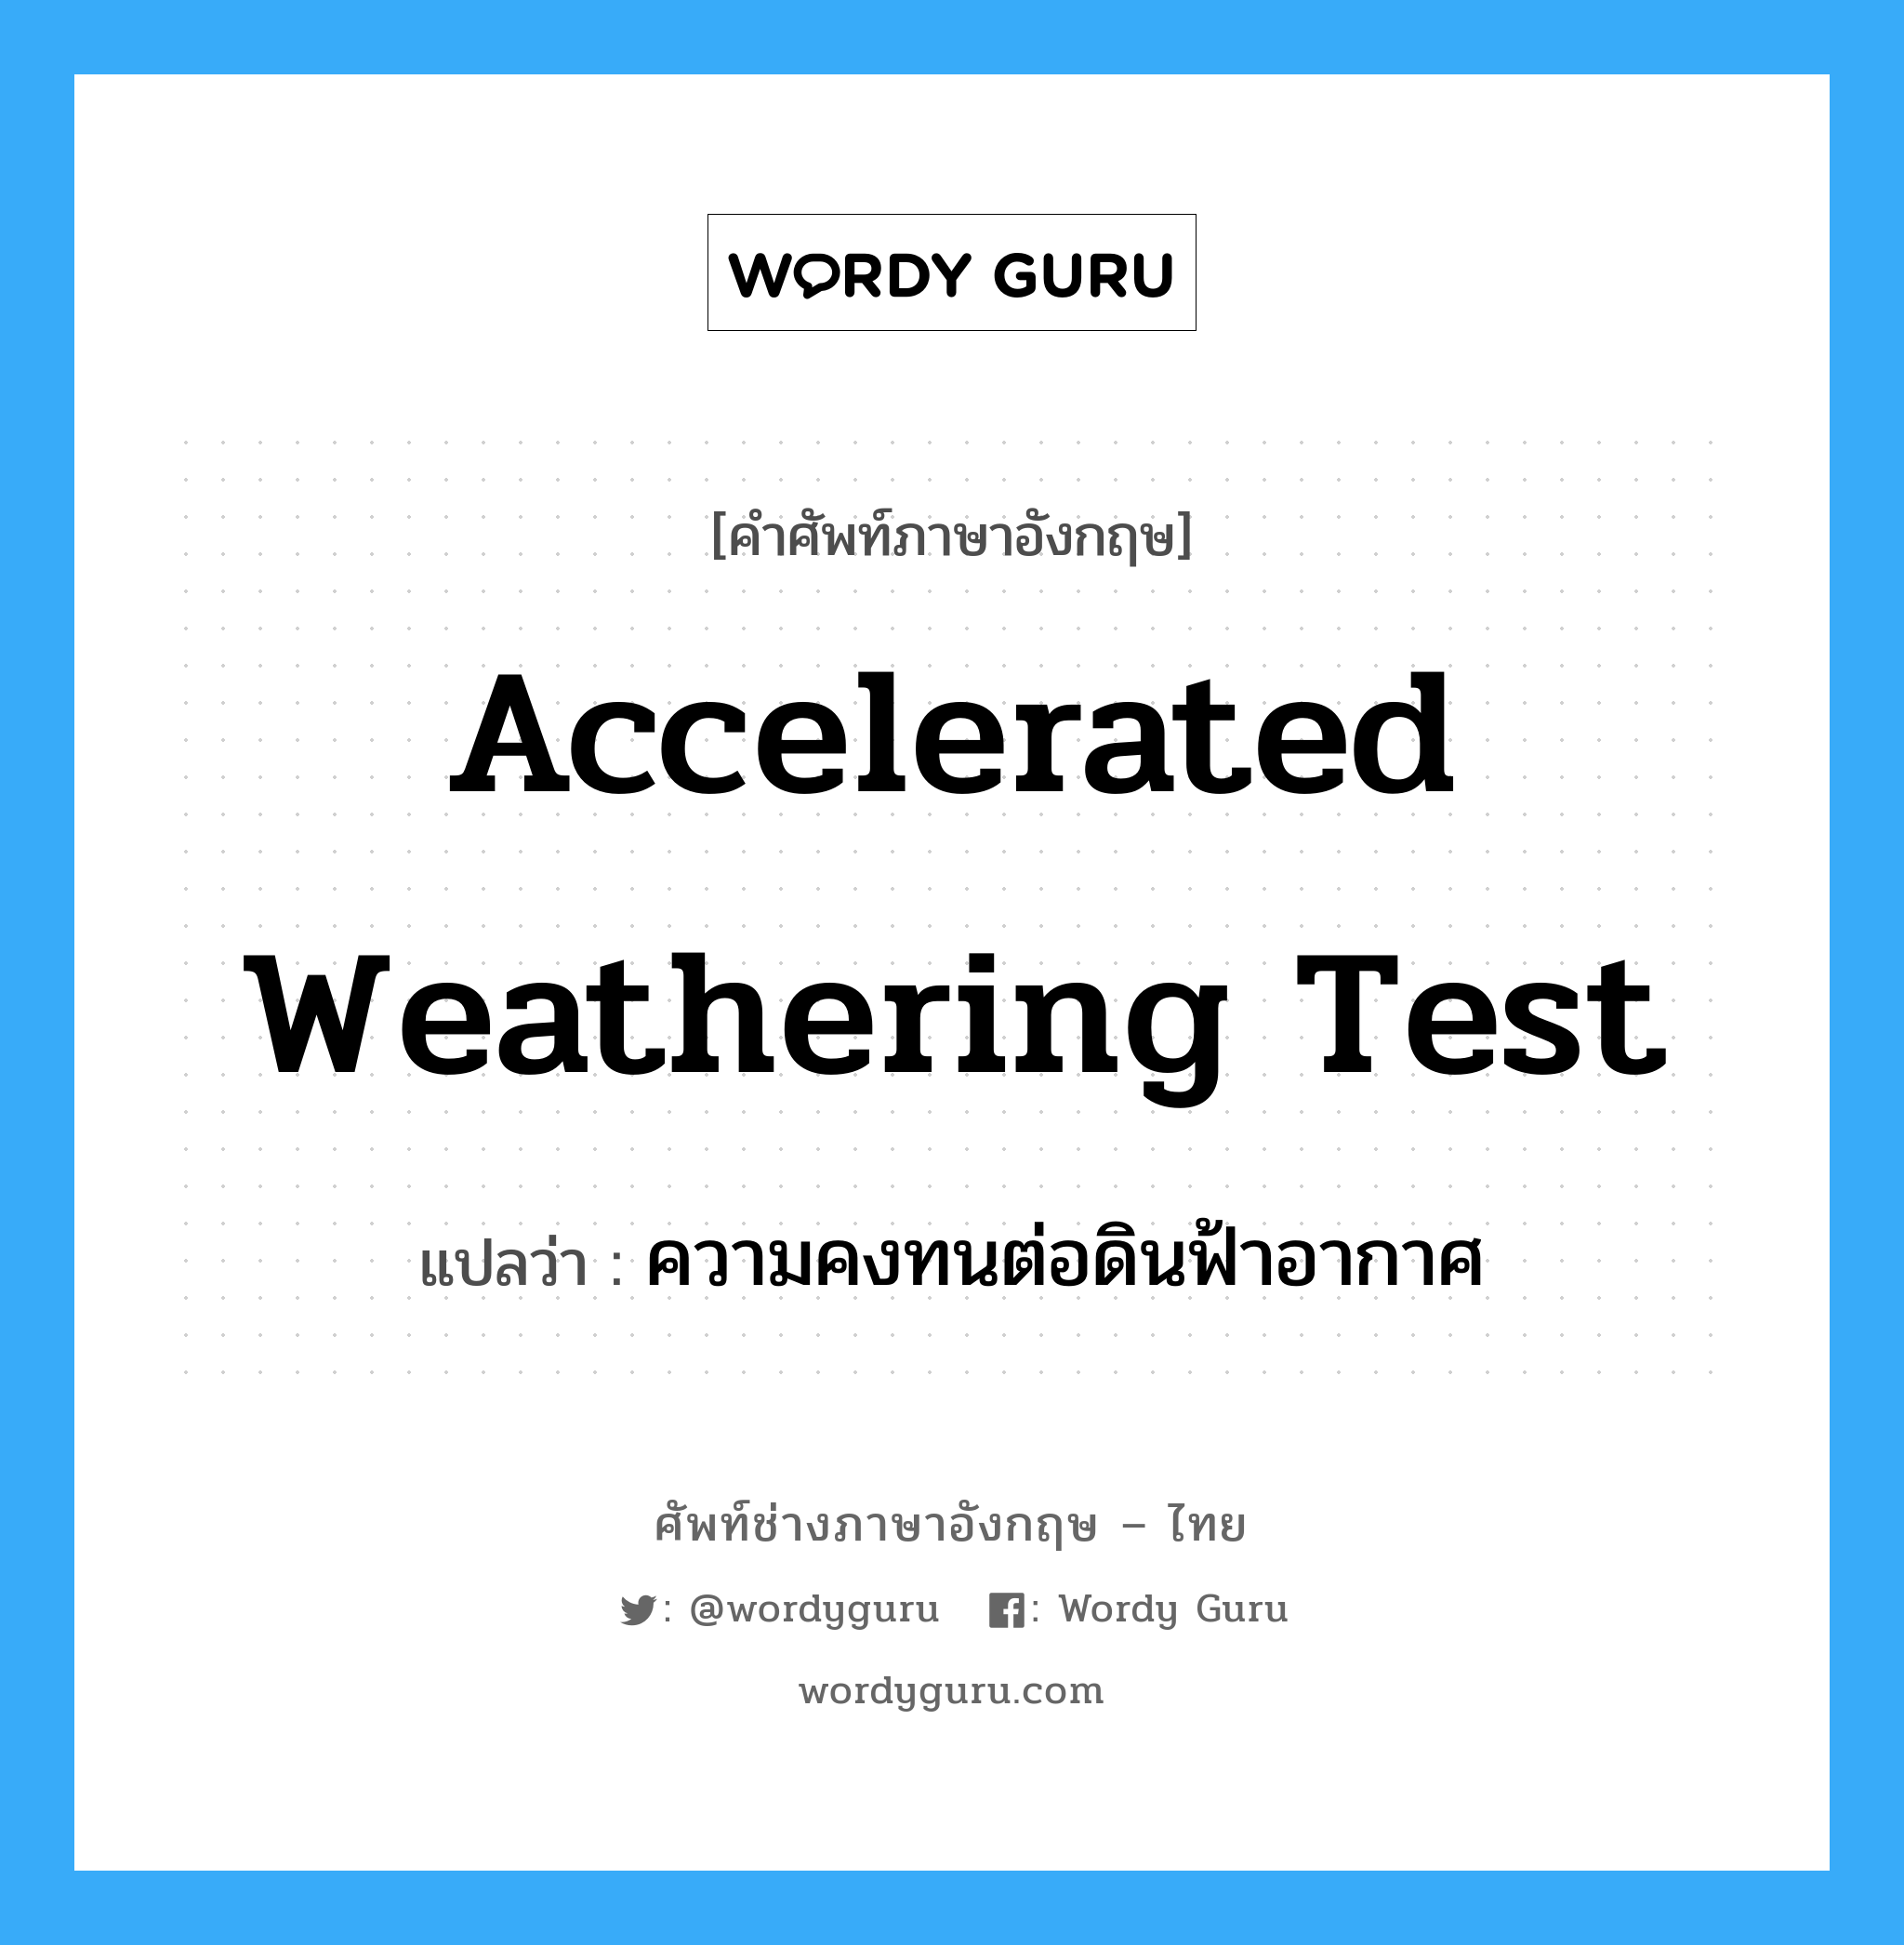 accelerated weathering test แปลว่า?, คำศัพท์ช่างภาษาอังกฤษ - ไทย accelerated weathering test คำศัพท์ภาษาอังกฤษ accelerated weathering test แปลว่า ความคงทนต่อดินฟ้าอากาศ